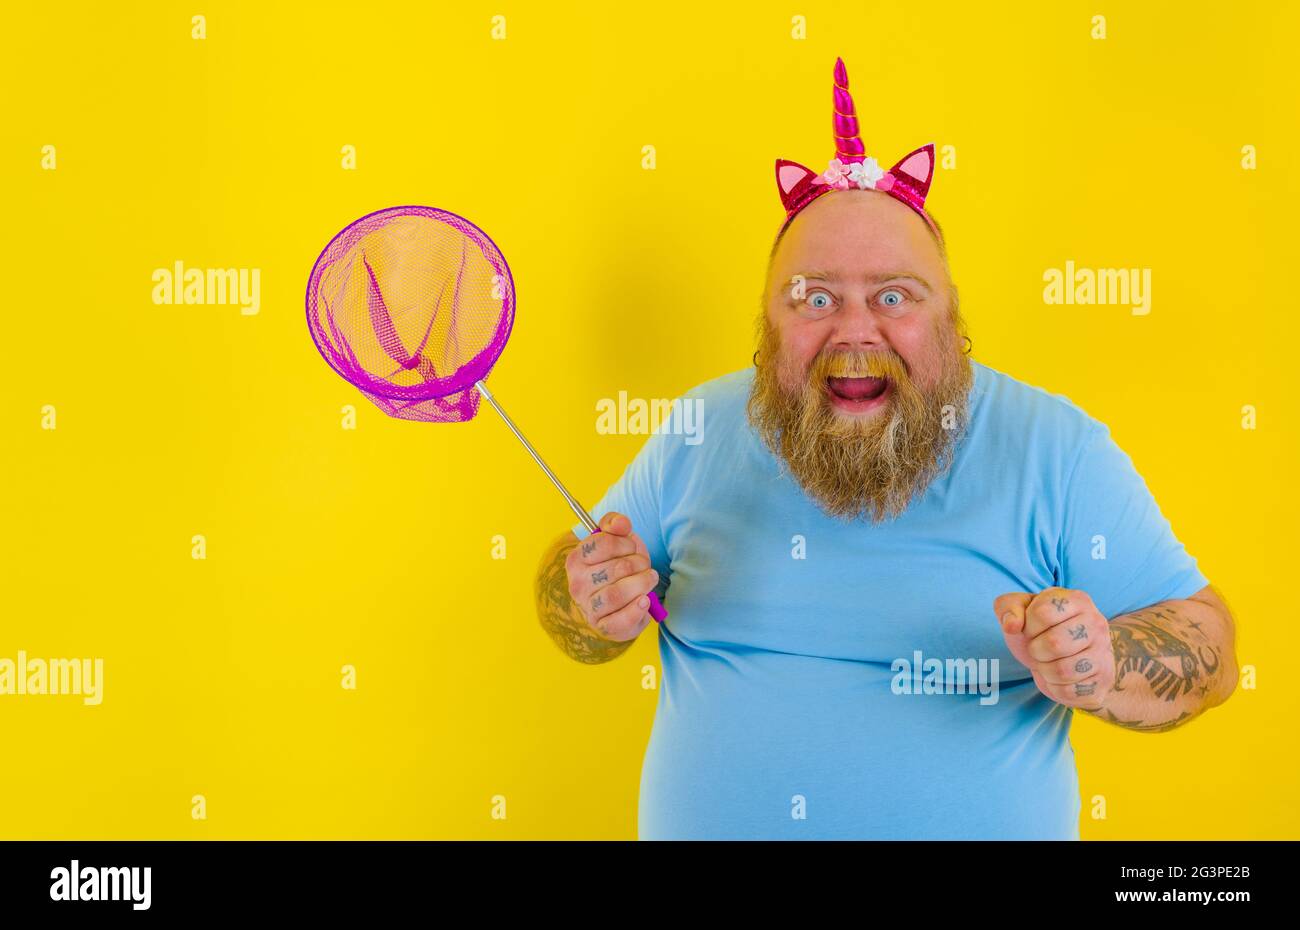 Fat happy man with headband play with sea net Stock Photo